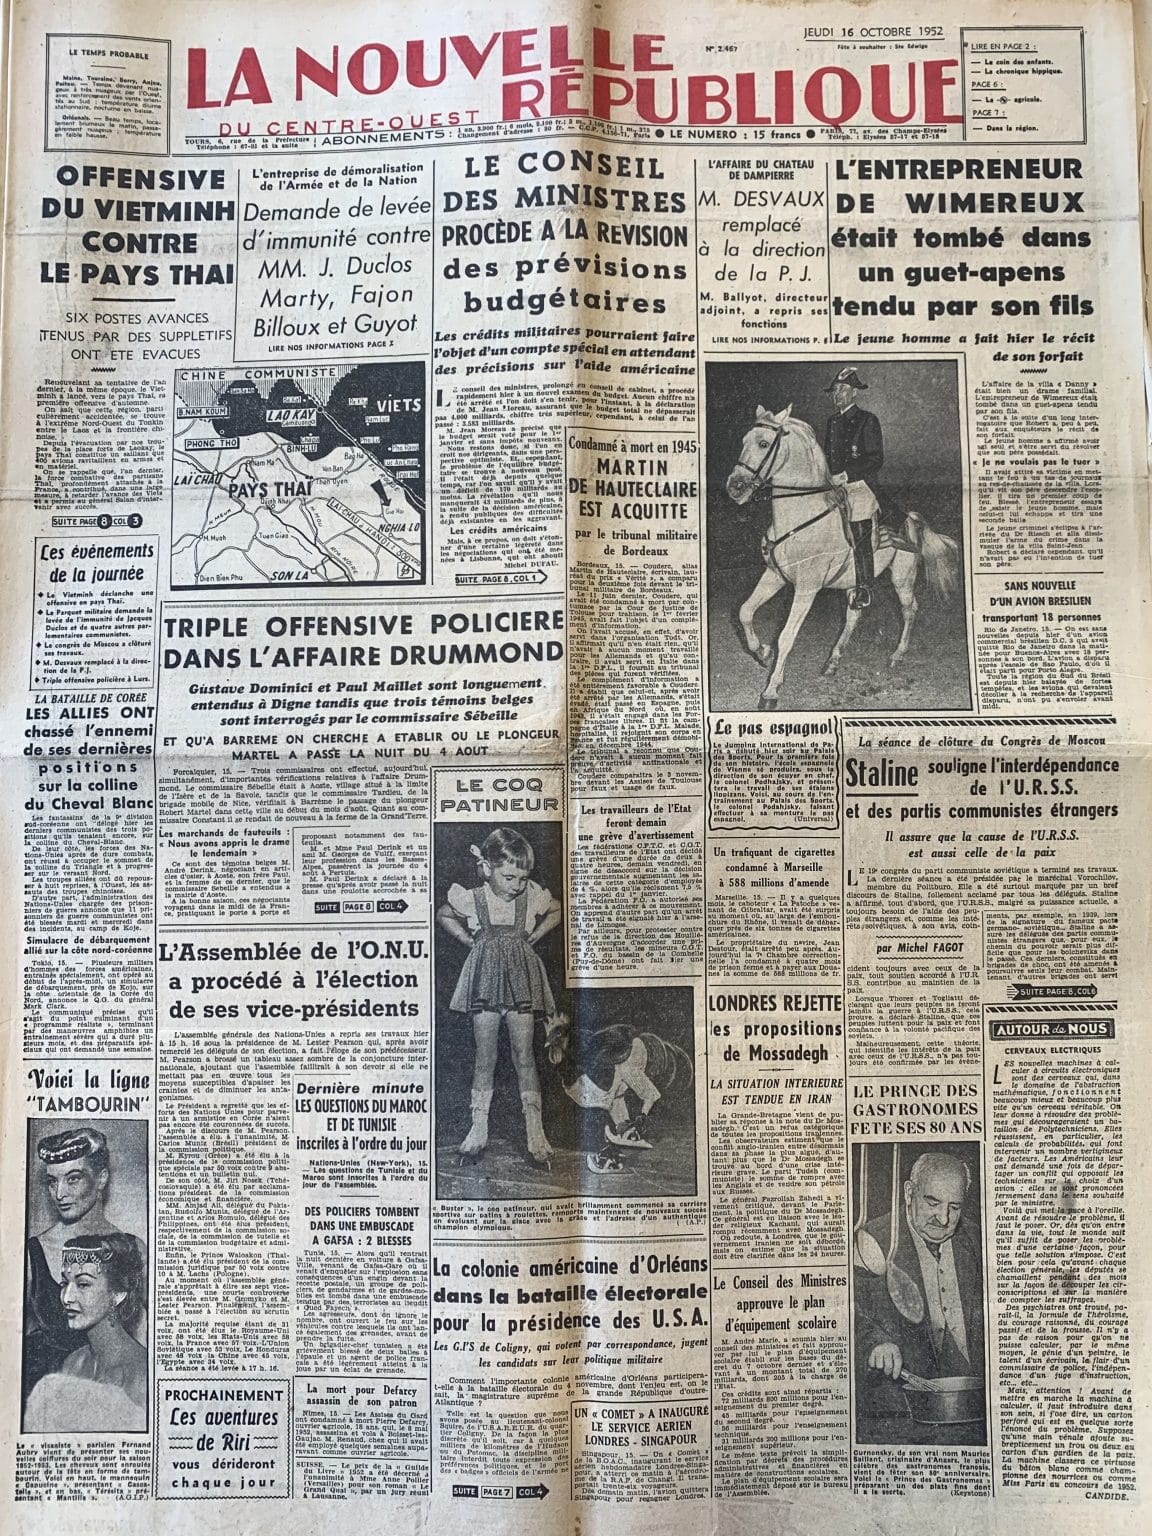 Archive départementale d’Angers, La Nouvelle République, Une du 18 et 19 octobre 1952, 84JO8